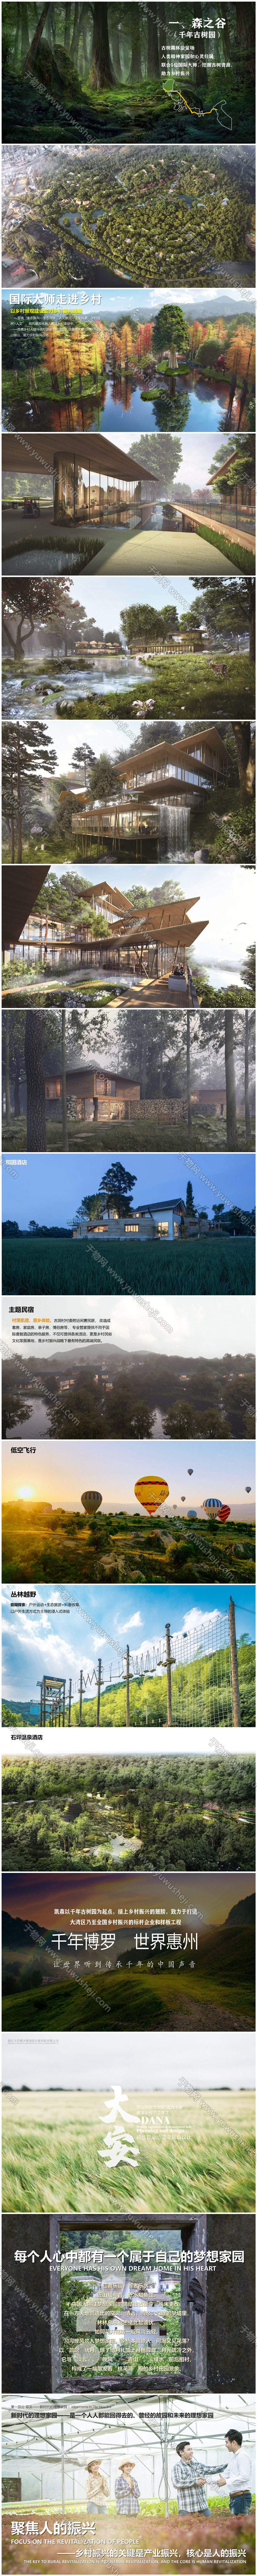 2023.01 惠州大湾区森林乡村振兴方案 56页 页面 15